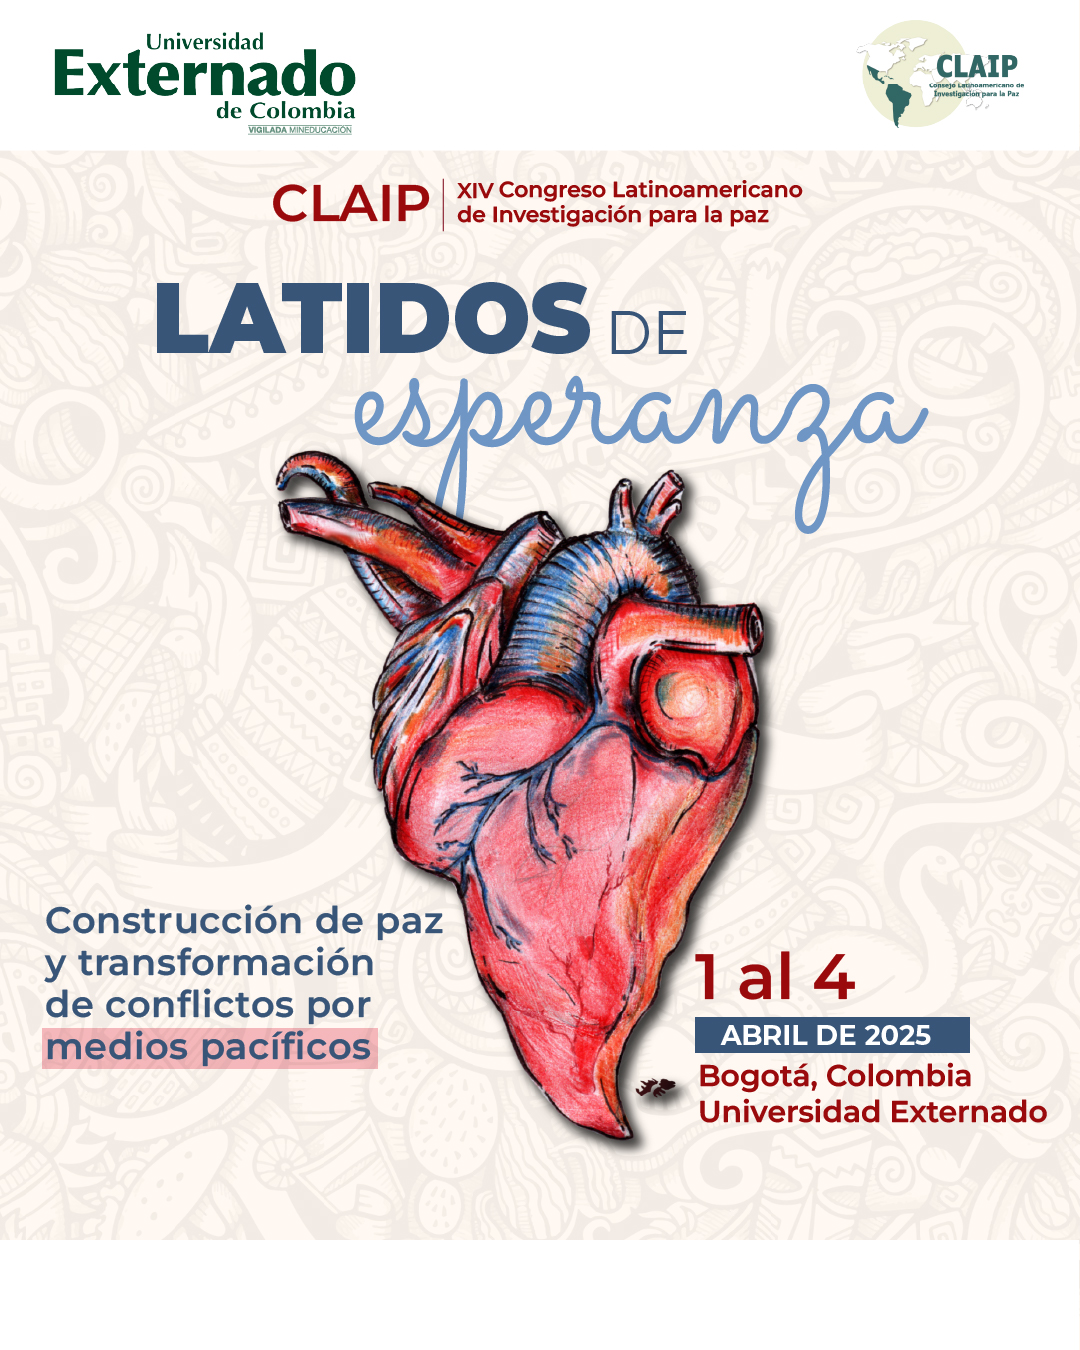 XIV Congreso Latinoamericano de Investigación para la Paz